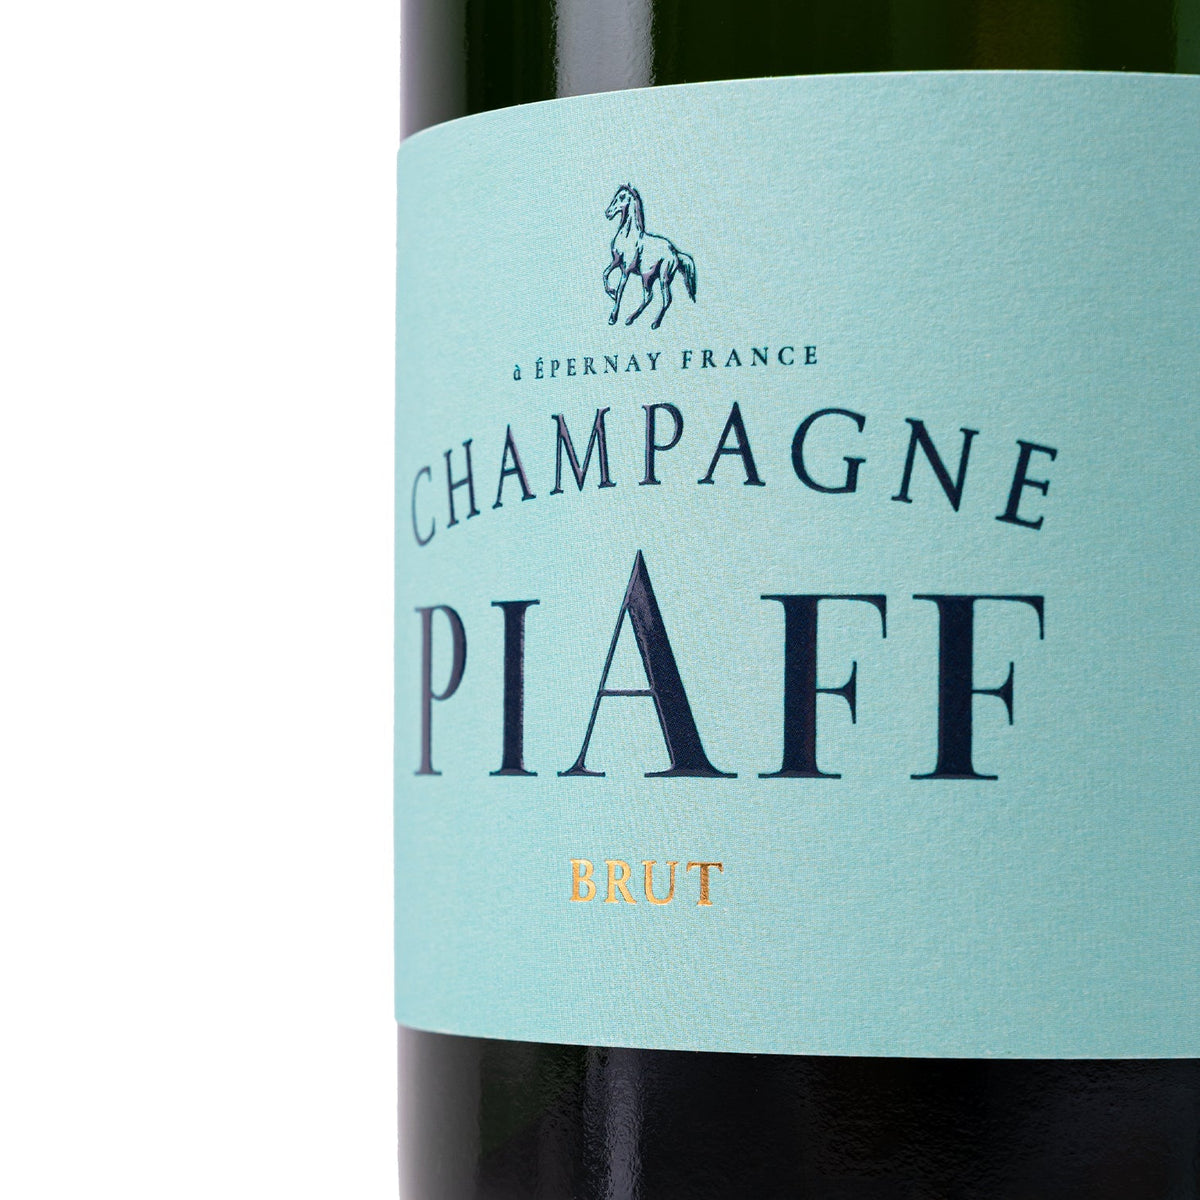 Champagne brut label 